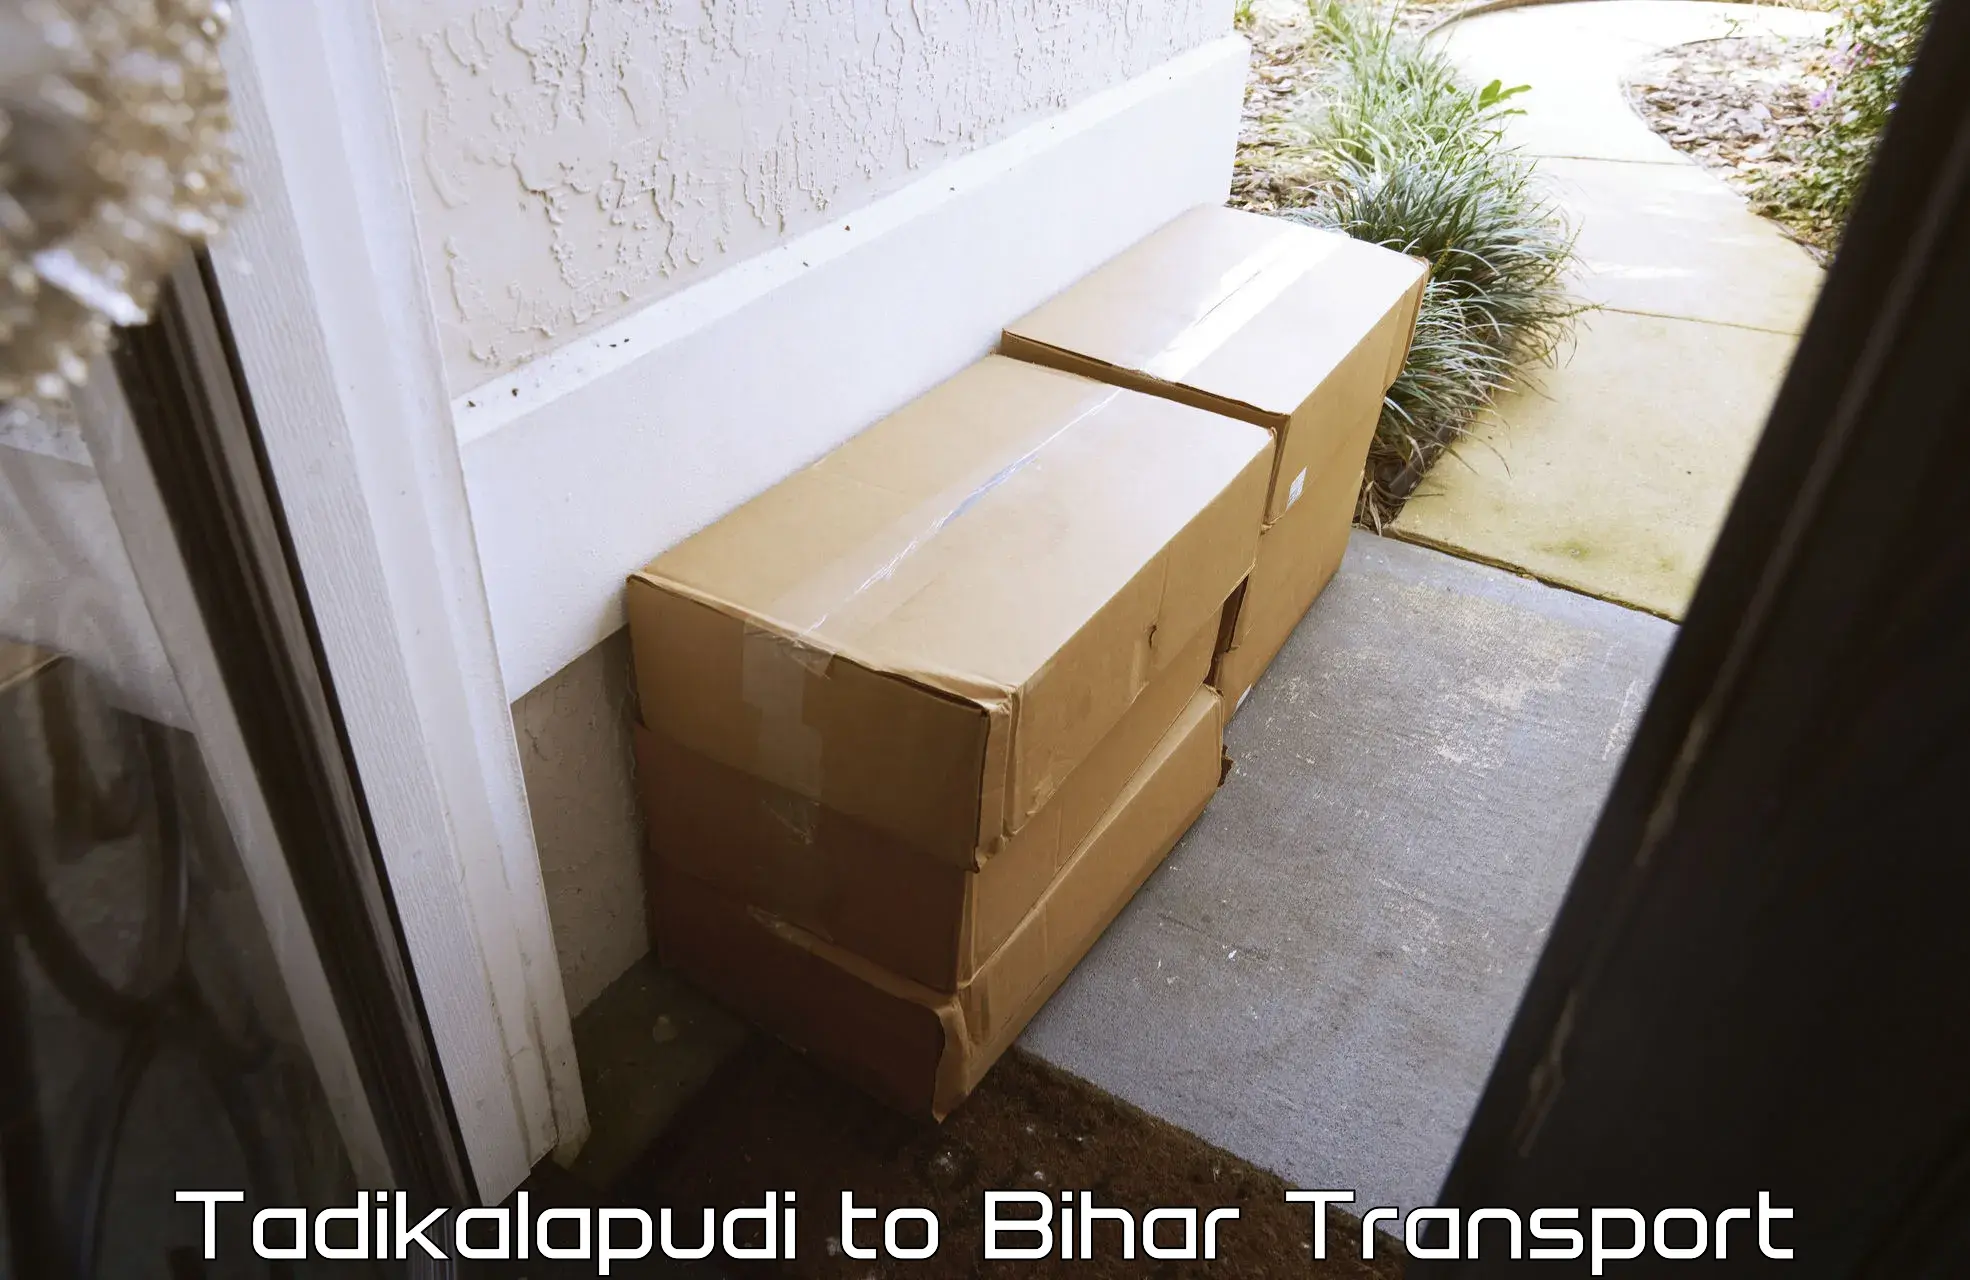 All India transport service Tadikalapudi to IIIT Bhagalpur